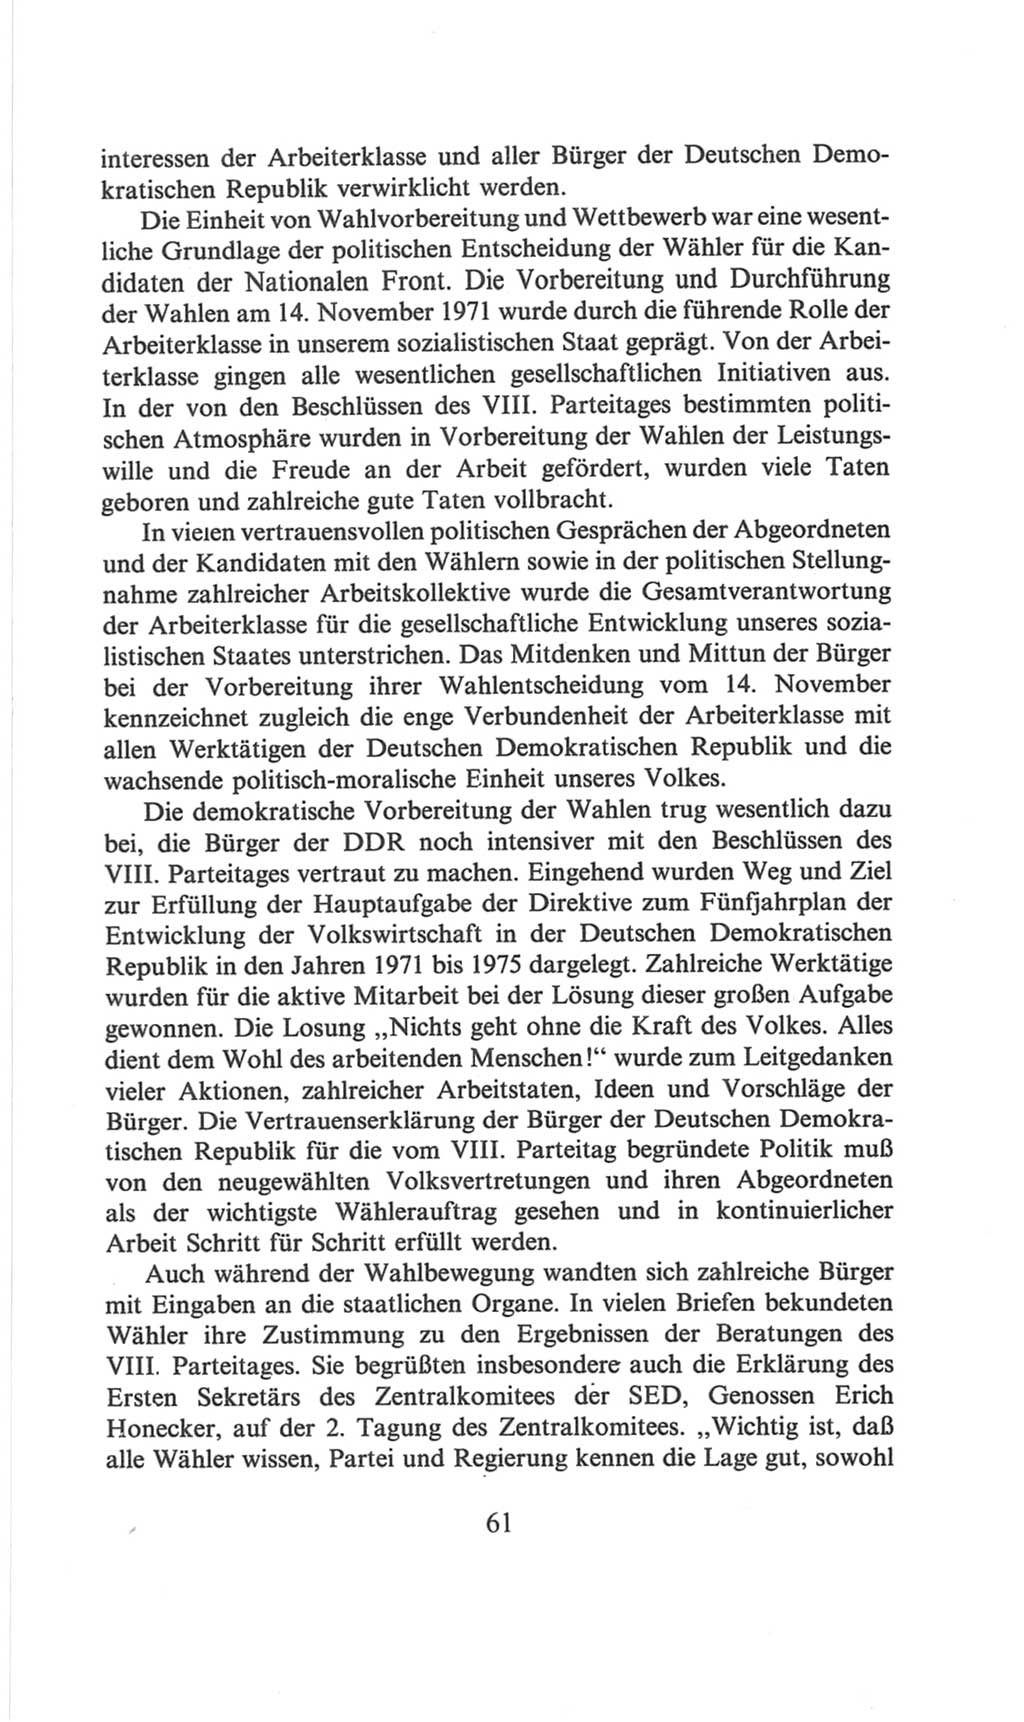 Volkskammer (VK) der Deutschen Demokratischen Republik (DDR), 6. Wahlperiode 1971-1976, Seite 61 (VK. DDR 6. WP. 1971-1976, S. 61)